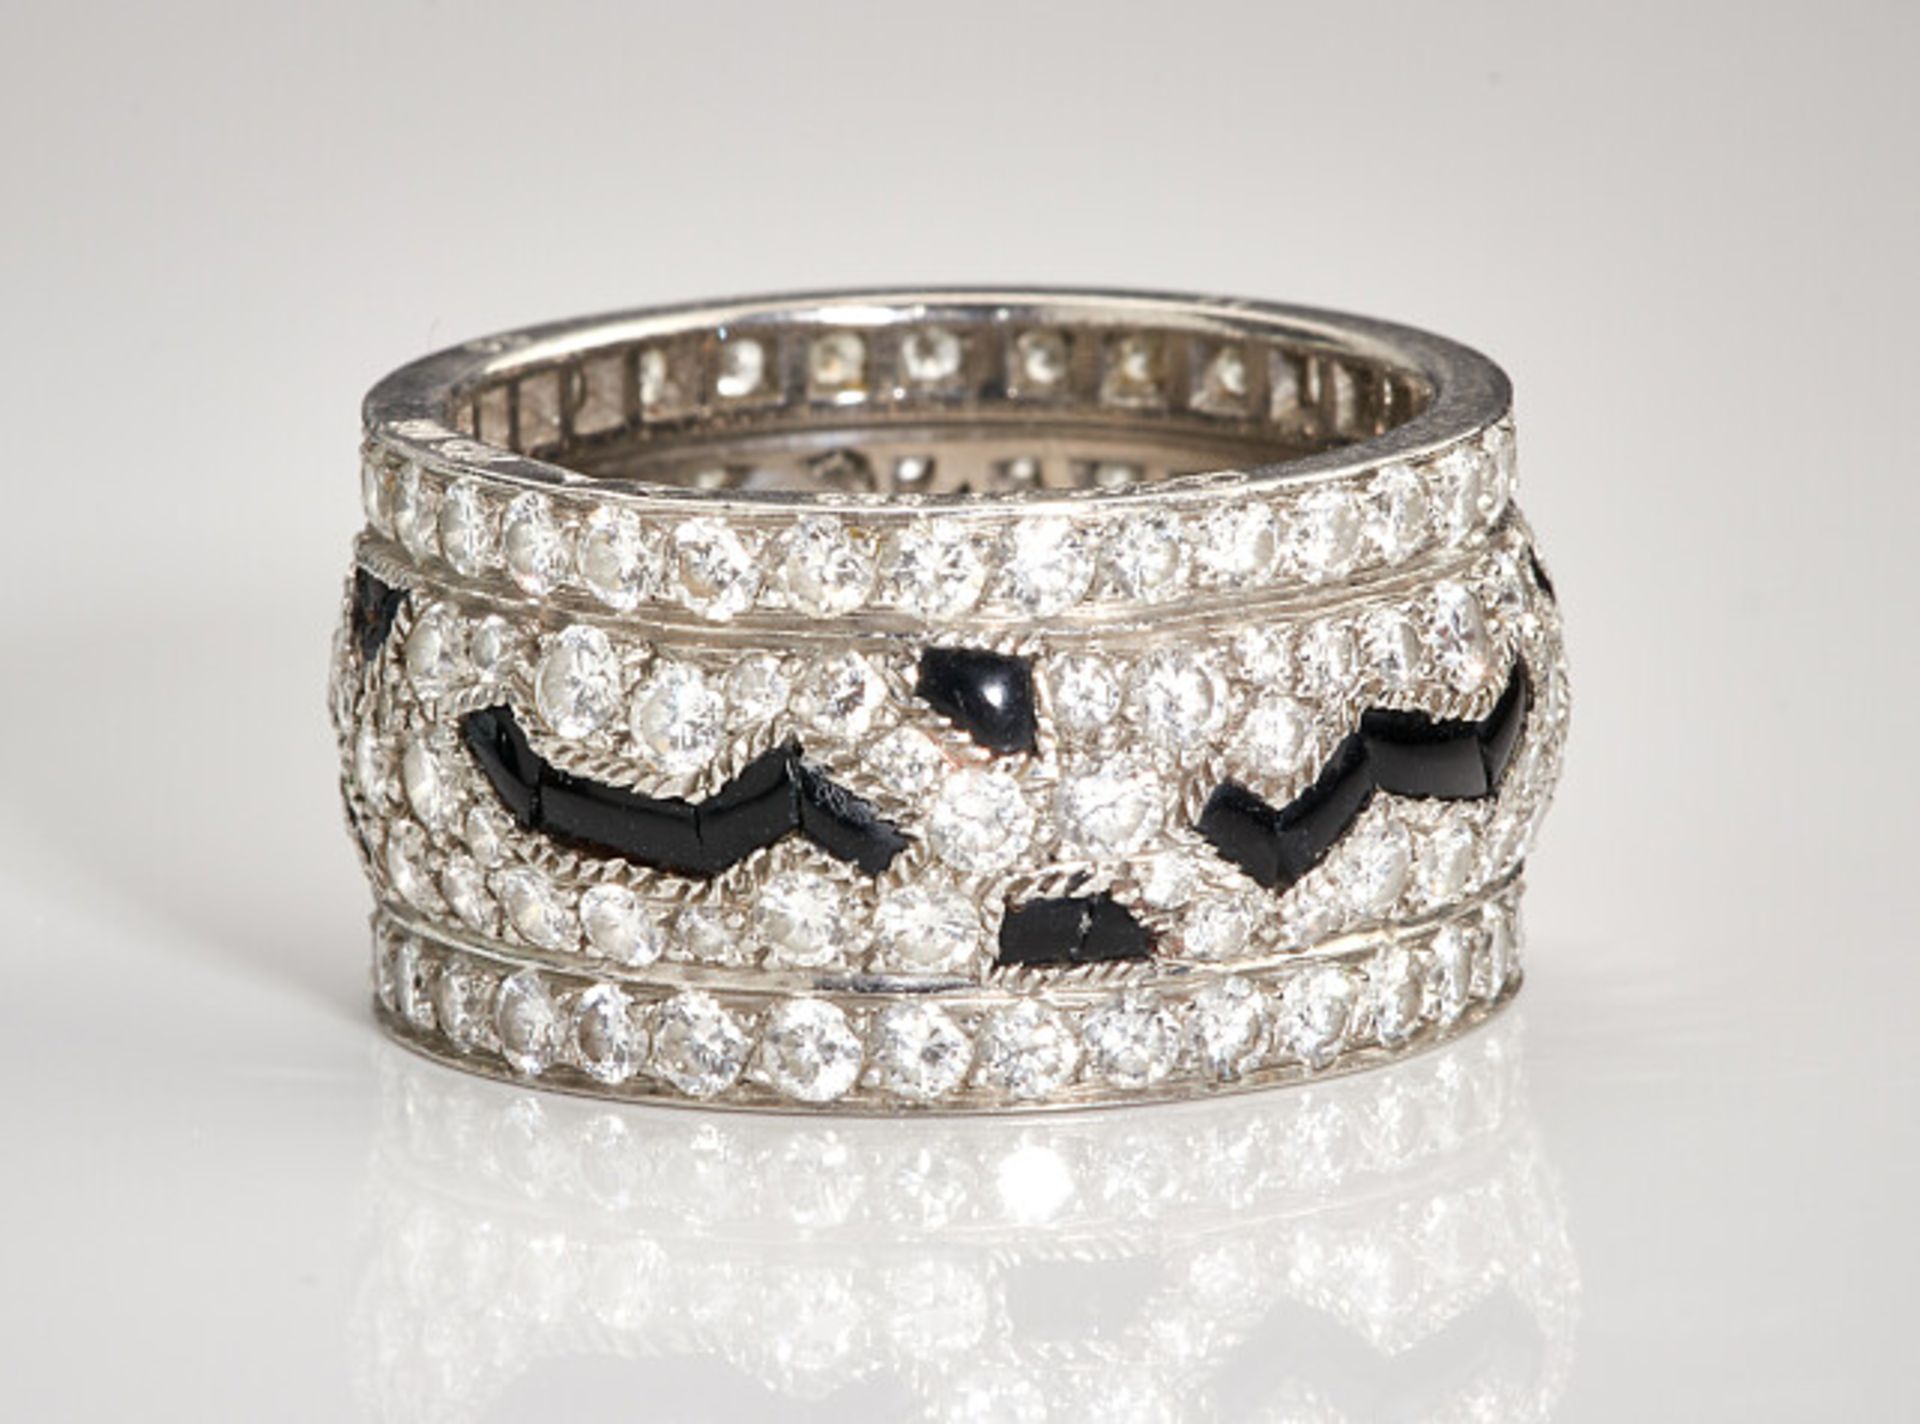 Deutsches Reich 1933 - 1945 - Schmuck und Juwelen : Diamant - Onyx Ring by Cartier. - Bild 11 aus 15